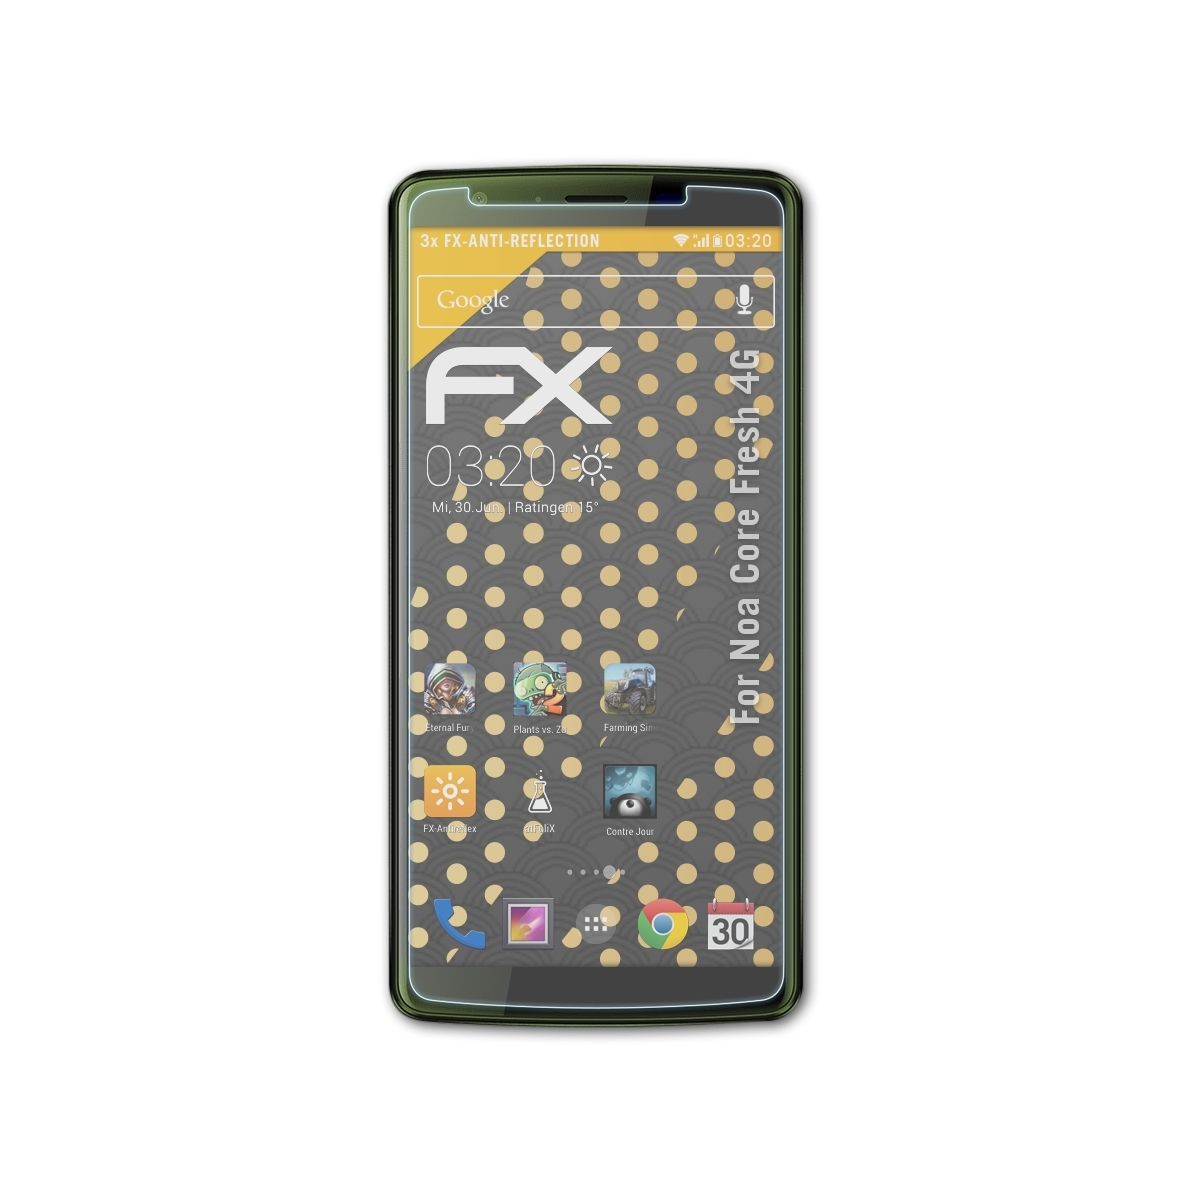 ATFOLIX 3x FX-Antireflex Displayschutz(für Noa Fresh Core 4G)